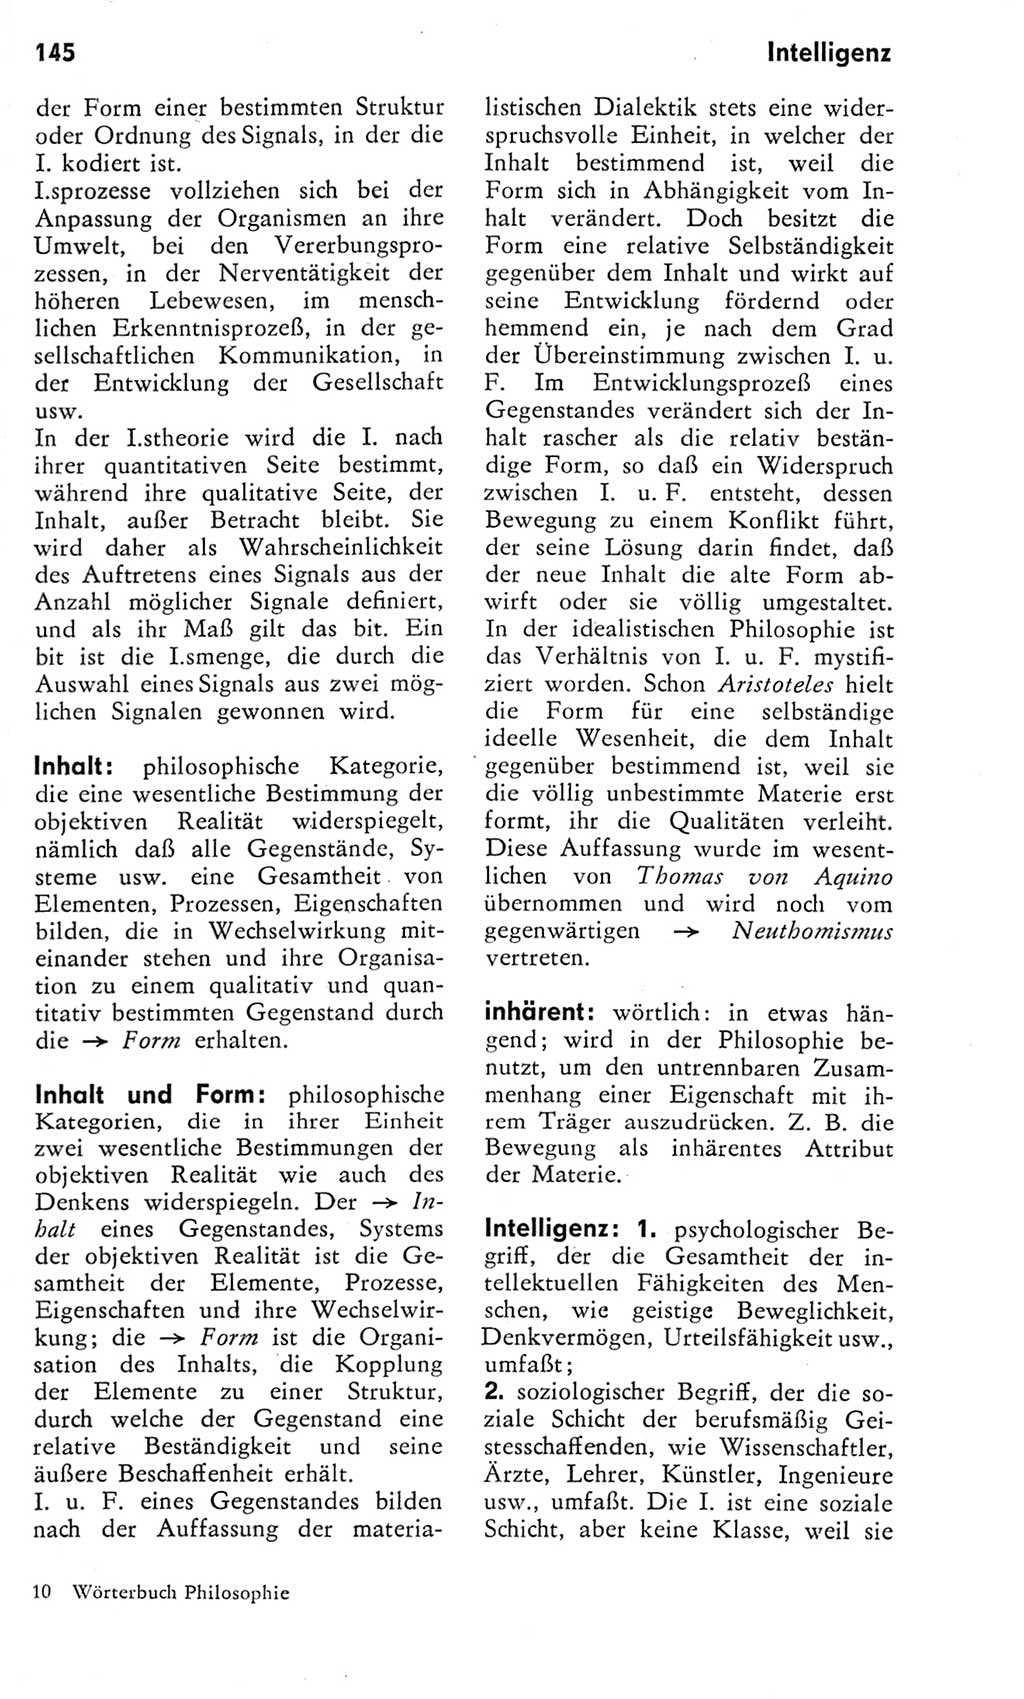 Kleines Wörterbuch der marxistisch-leninistischen Philosophie [Deutsche Demokratische Republik (DDR)] 1975, Seite 145 (Kl. Wb. ML Phil. DDR 1975, S. 145)